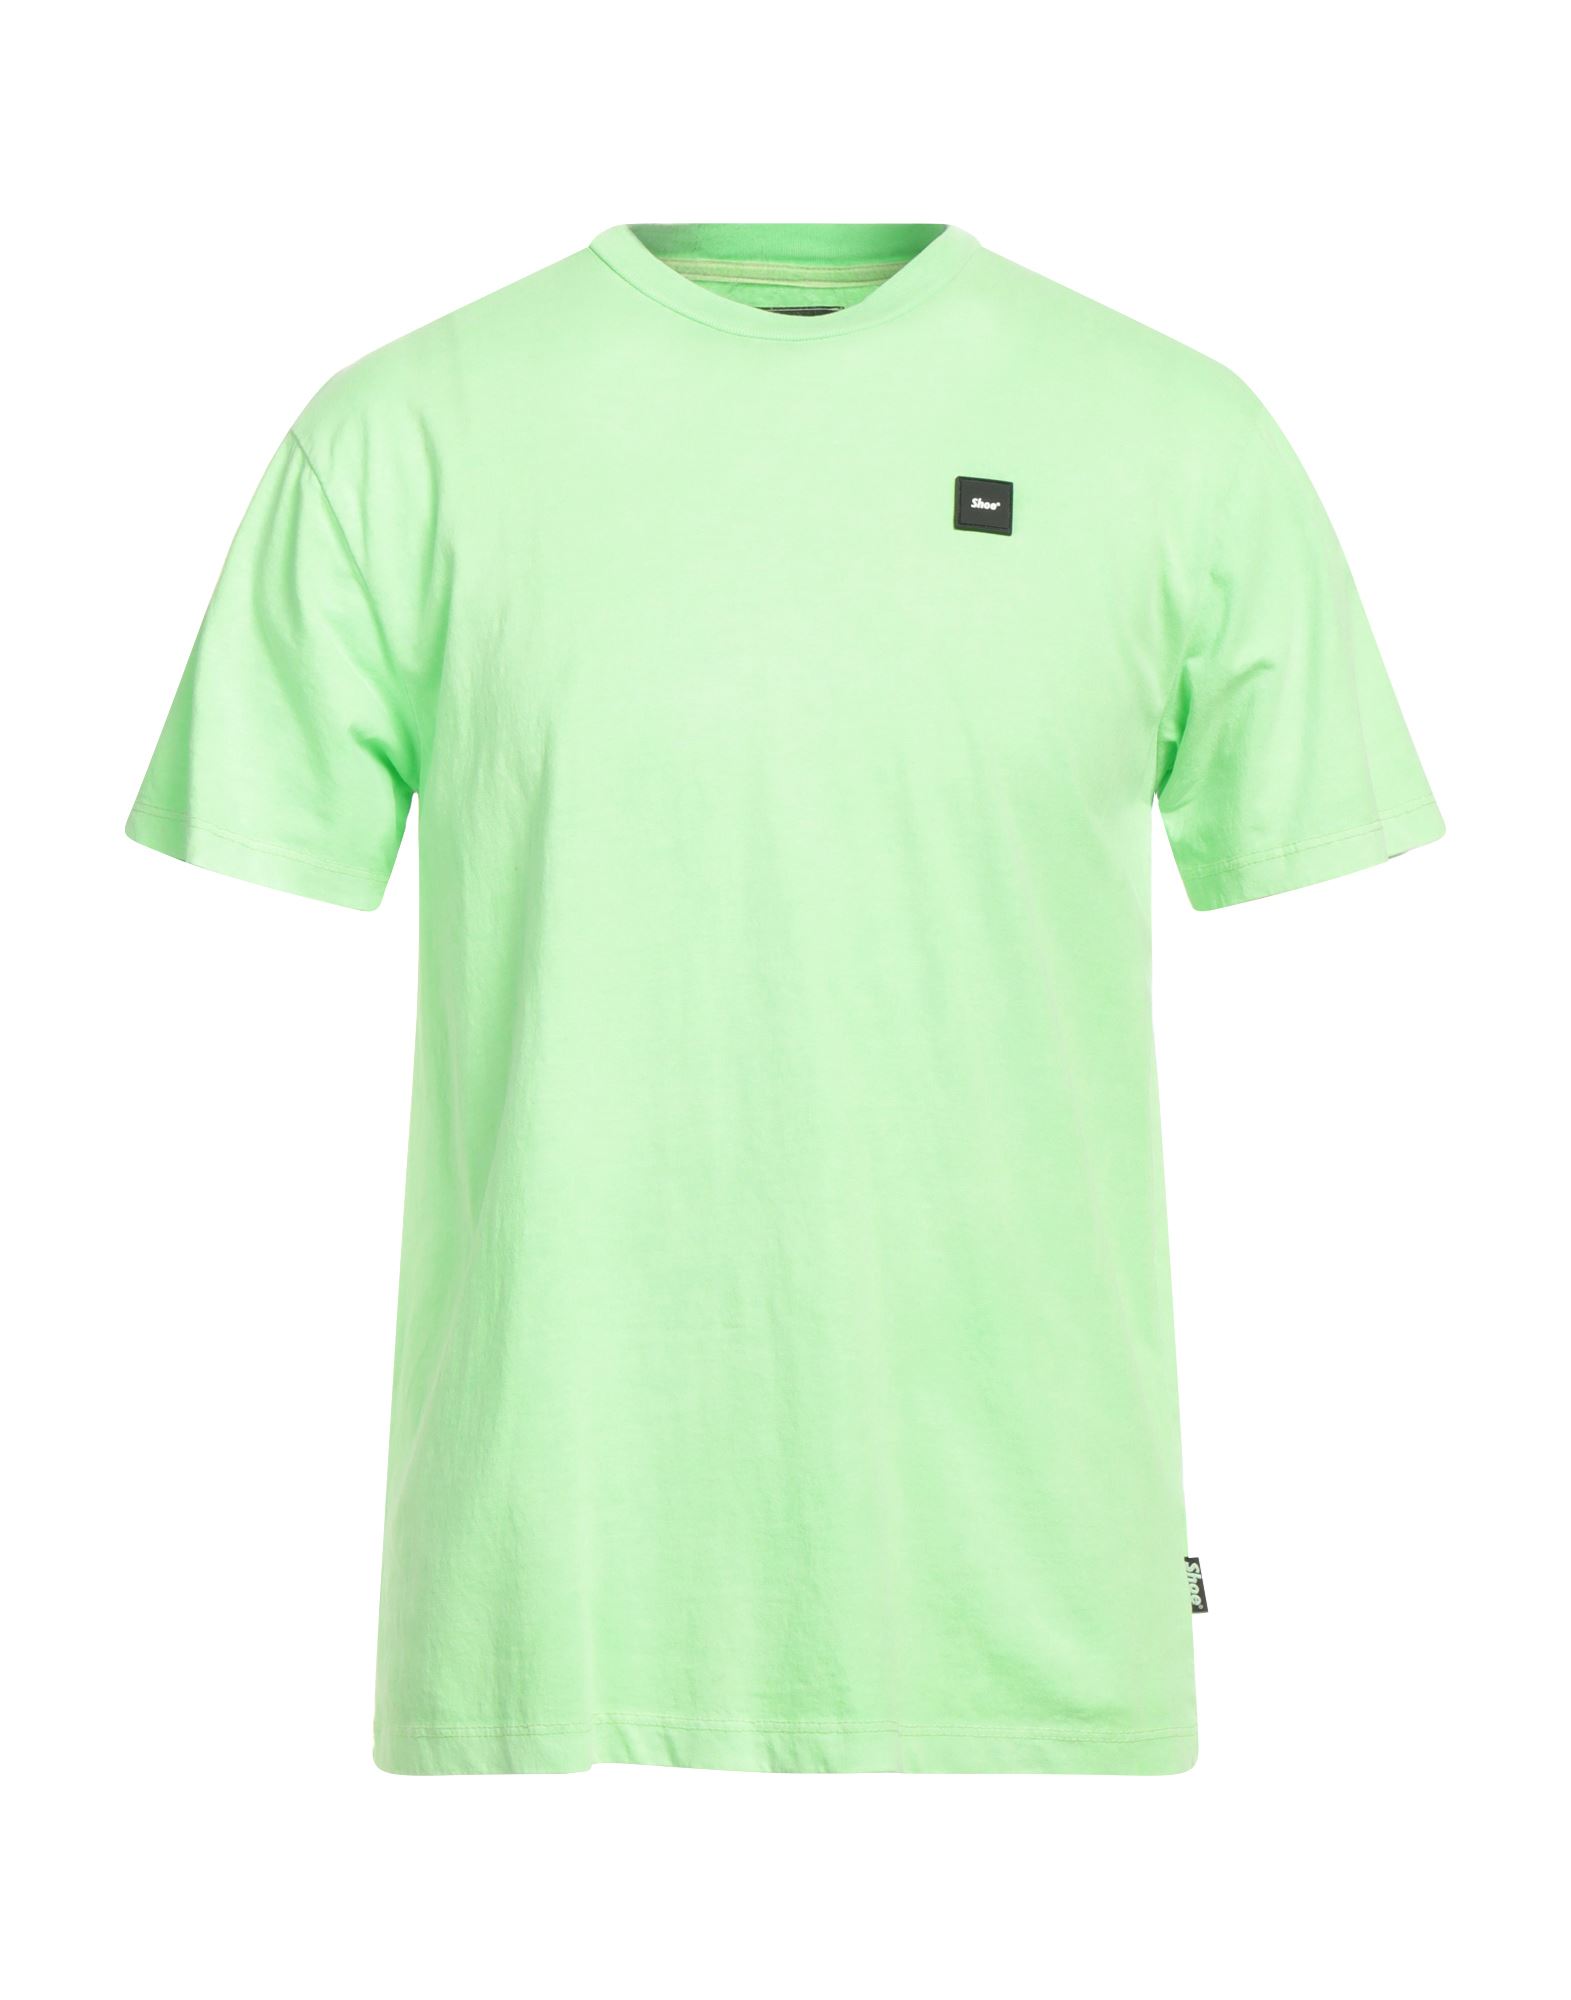 Shoe® Shoe Man T-shirt Green Size S Cotton